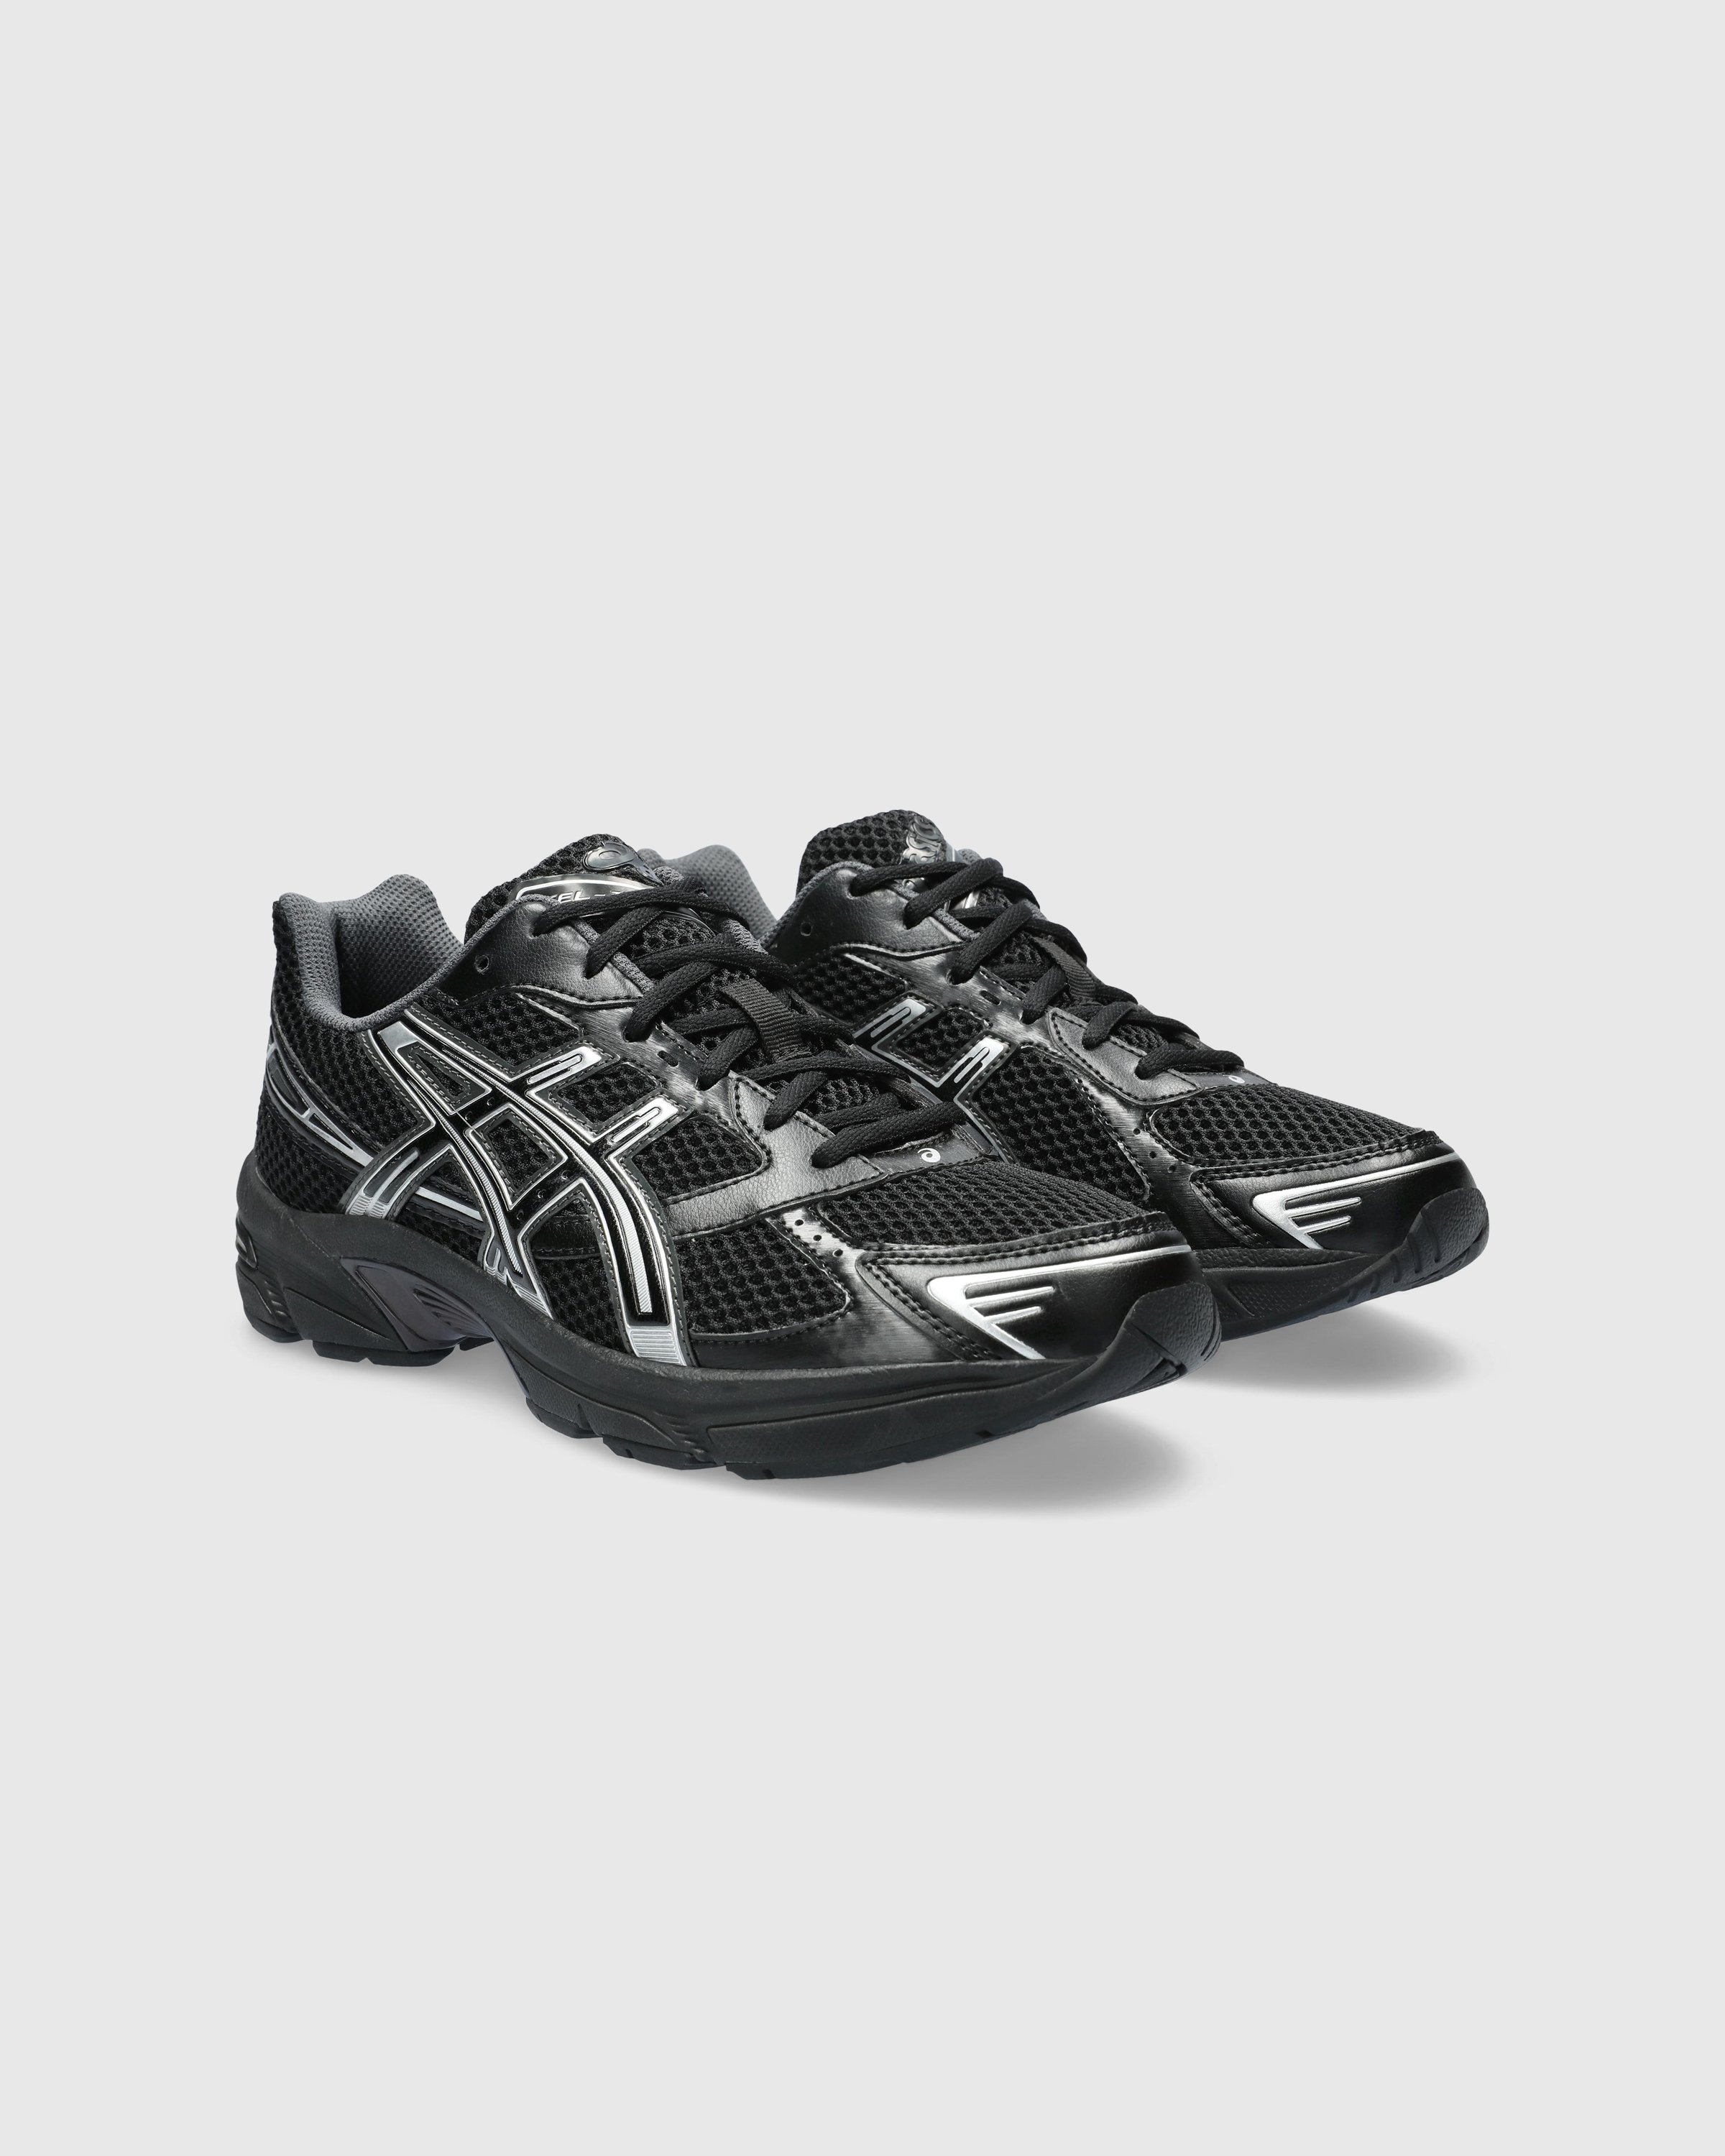 asics - GEL-1130 Black/Pure Silver - Footwear - Black - Image 3